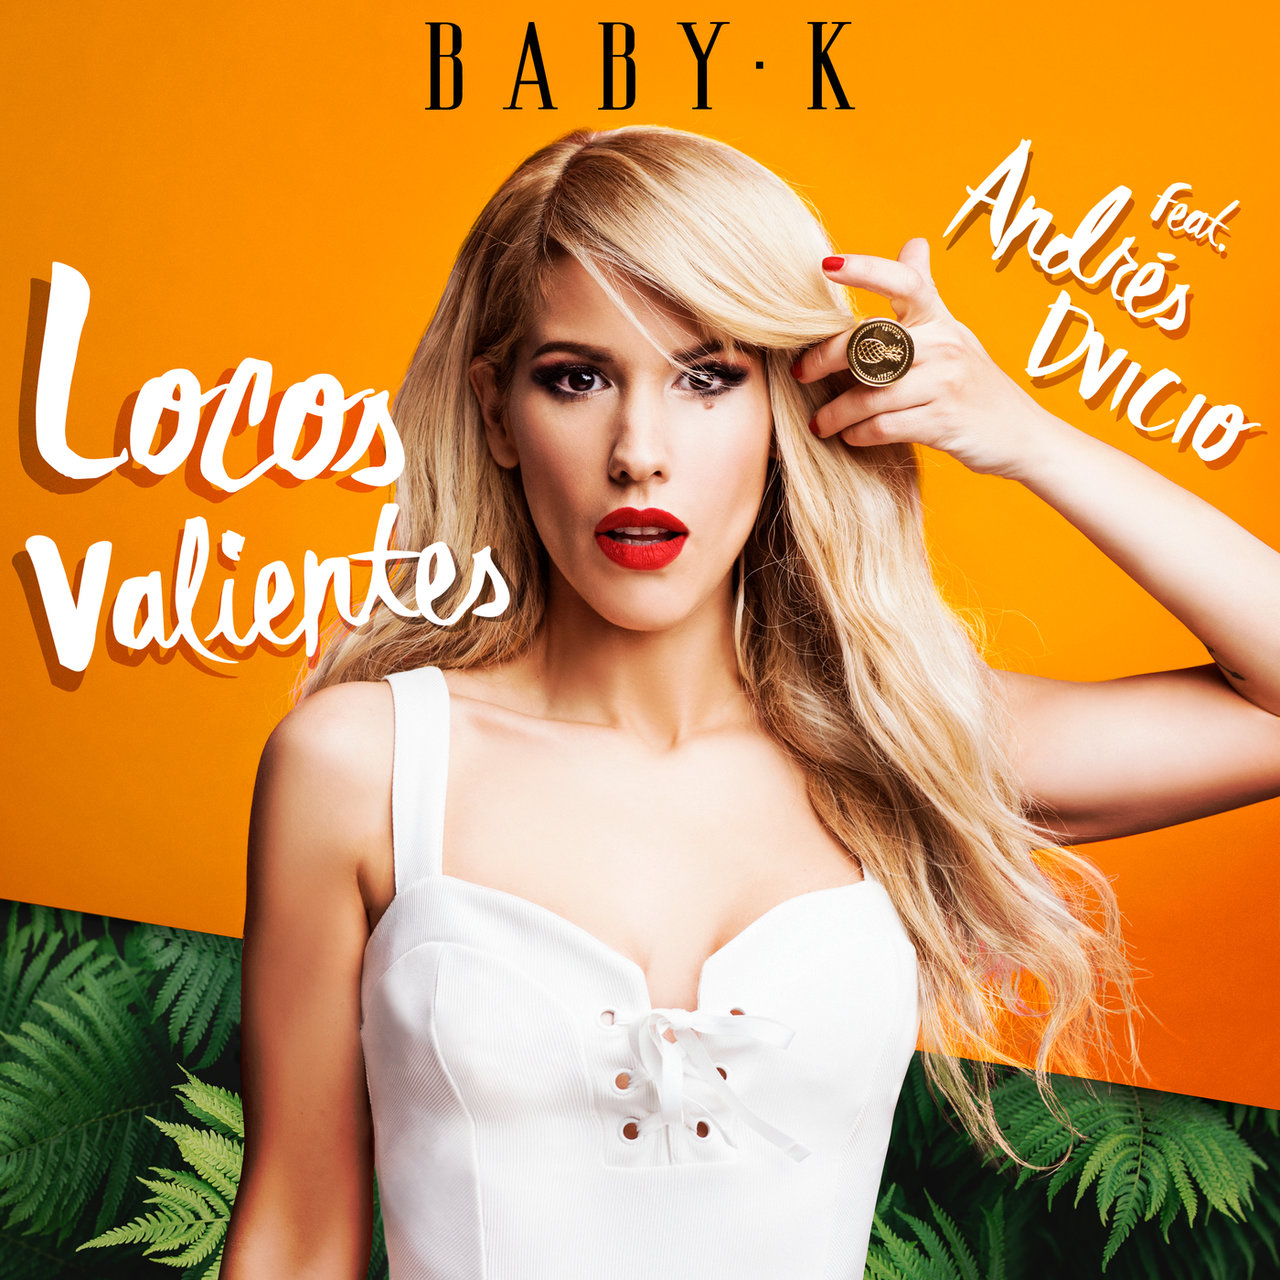 Baby K featuring Andrés Dvicio — Locos Valientes cover artwork